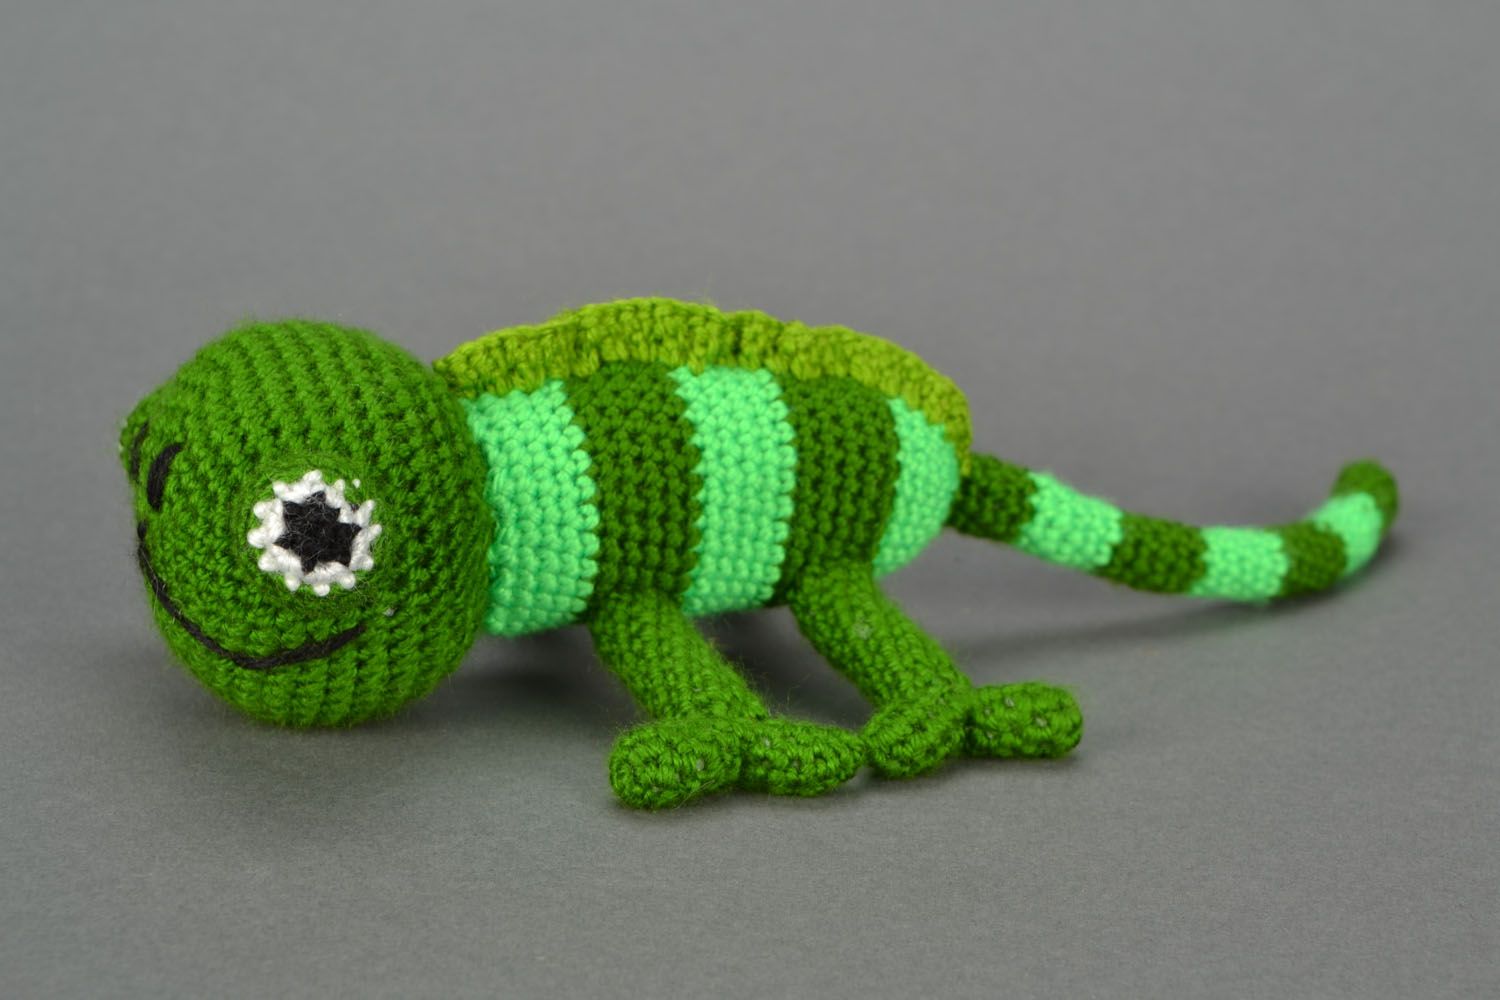 Homemade crochet toy Chameleon photo 3